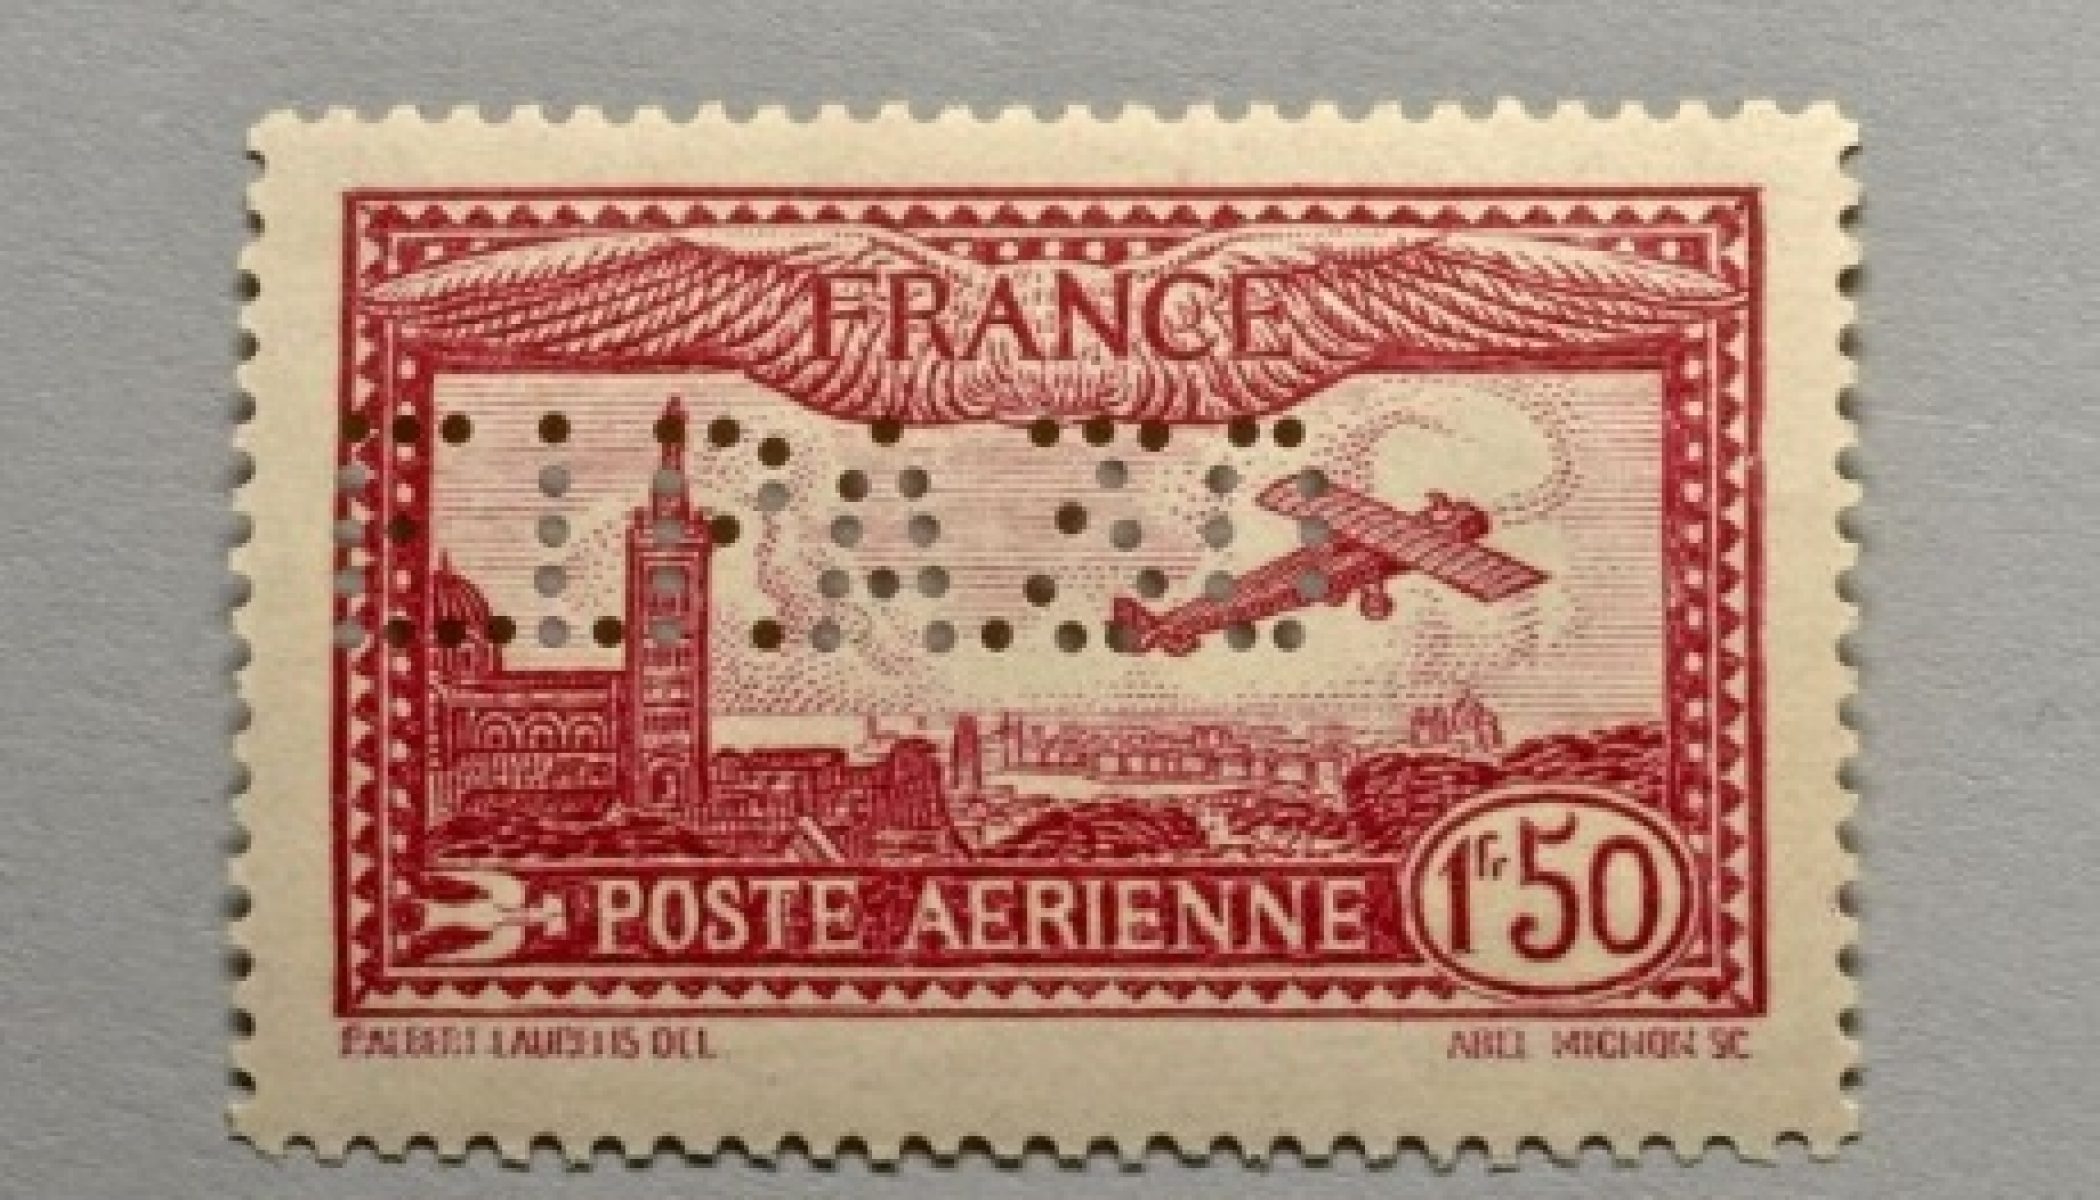 Timbres Fiscaux et papiers timbrés de France - French Revenue